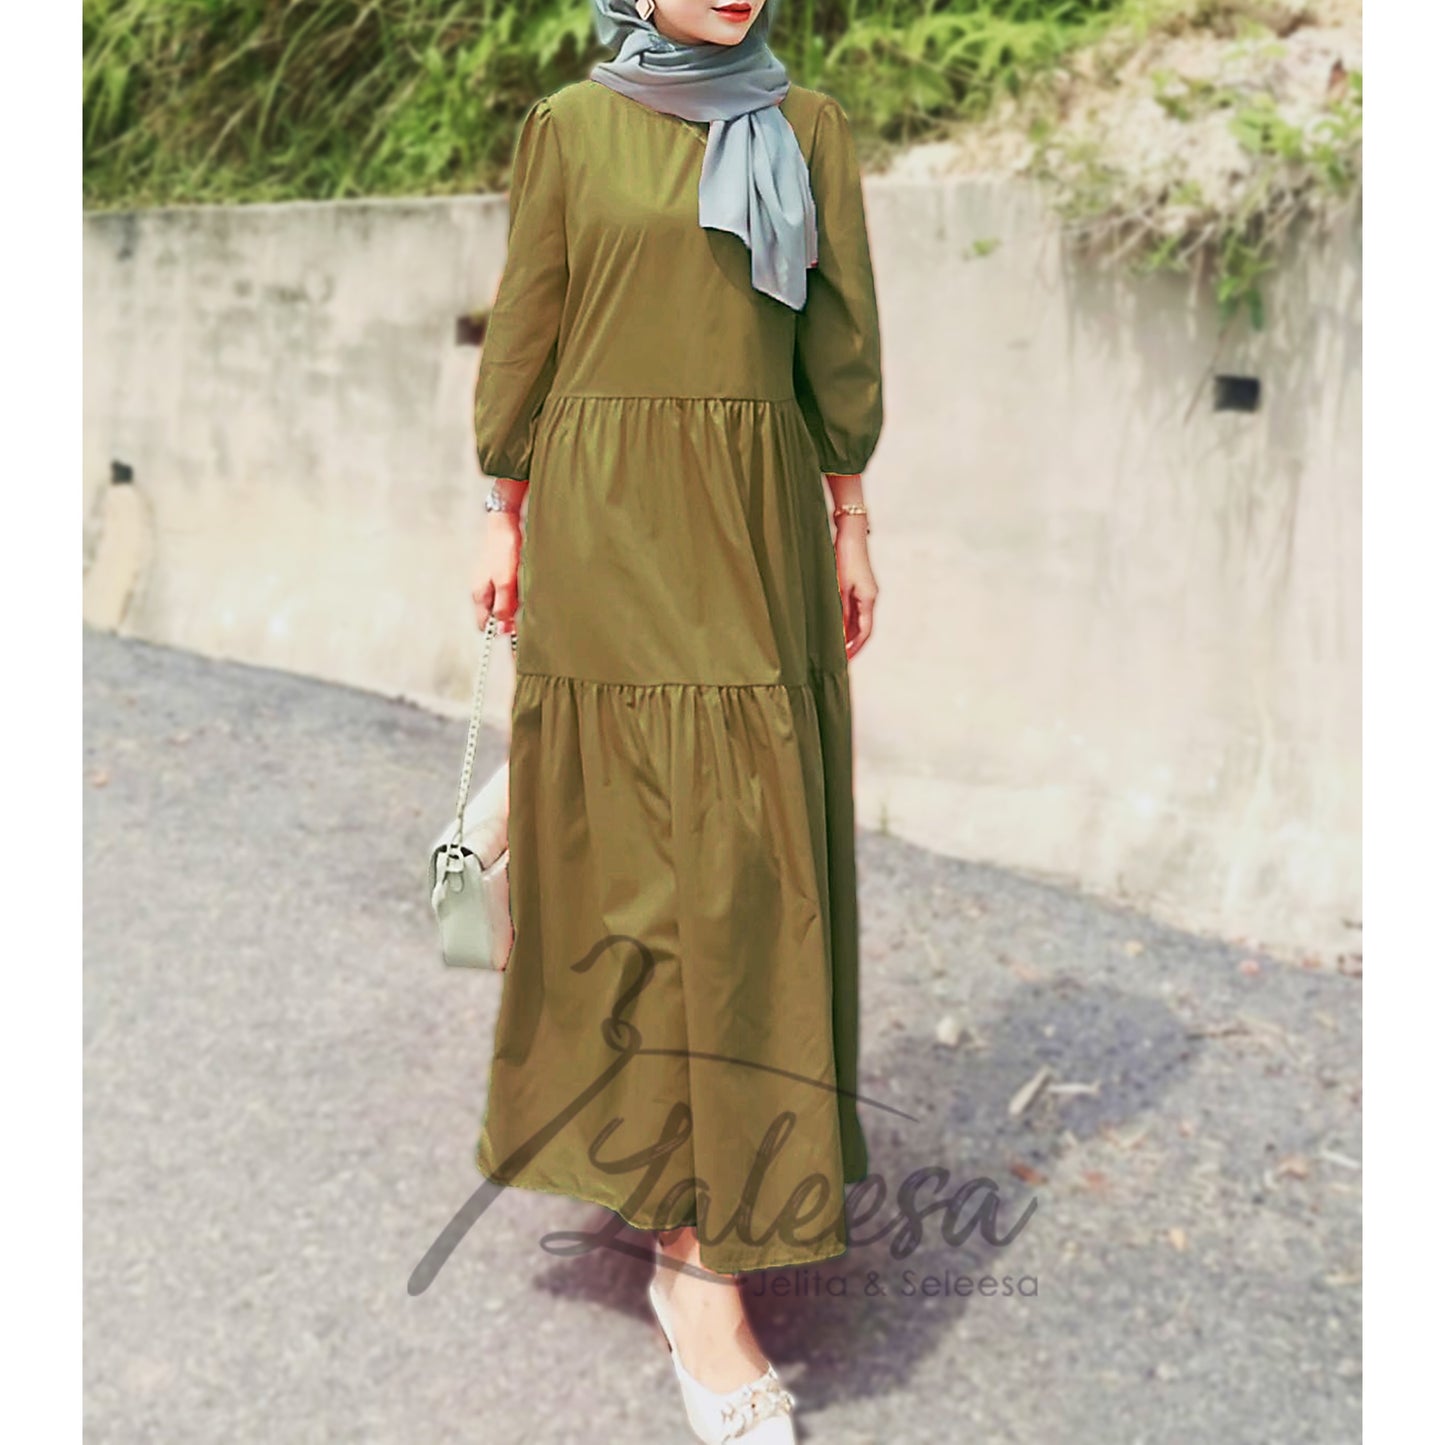 LALEESA LD246264 DRESS DARIA Puff Sleeve Ruffles Dress Muslimah Dress Women Dress Plus Size Baju Raya 2024